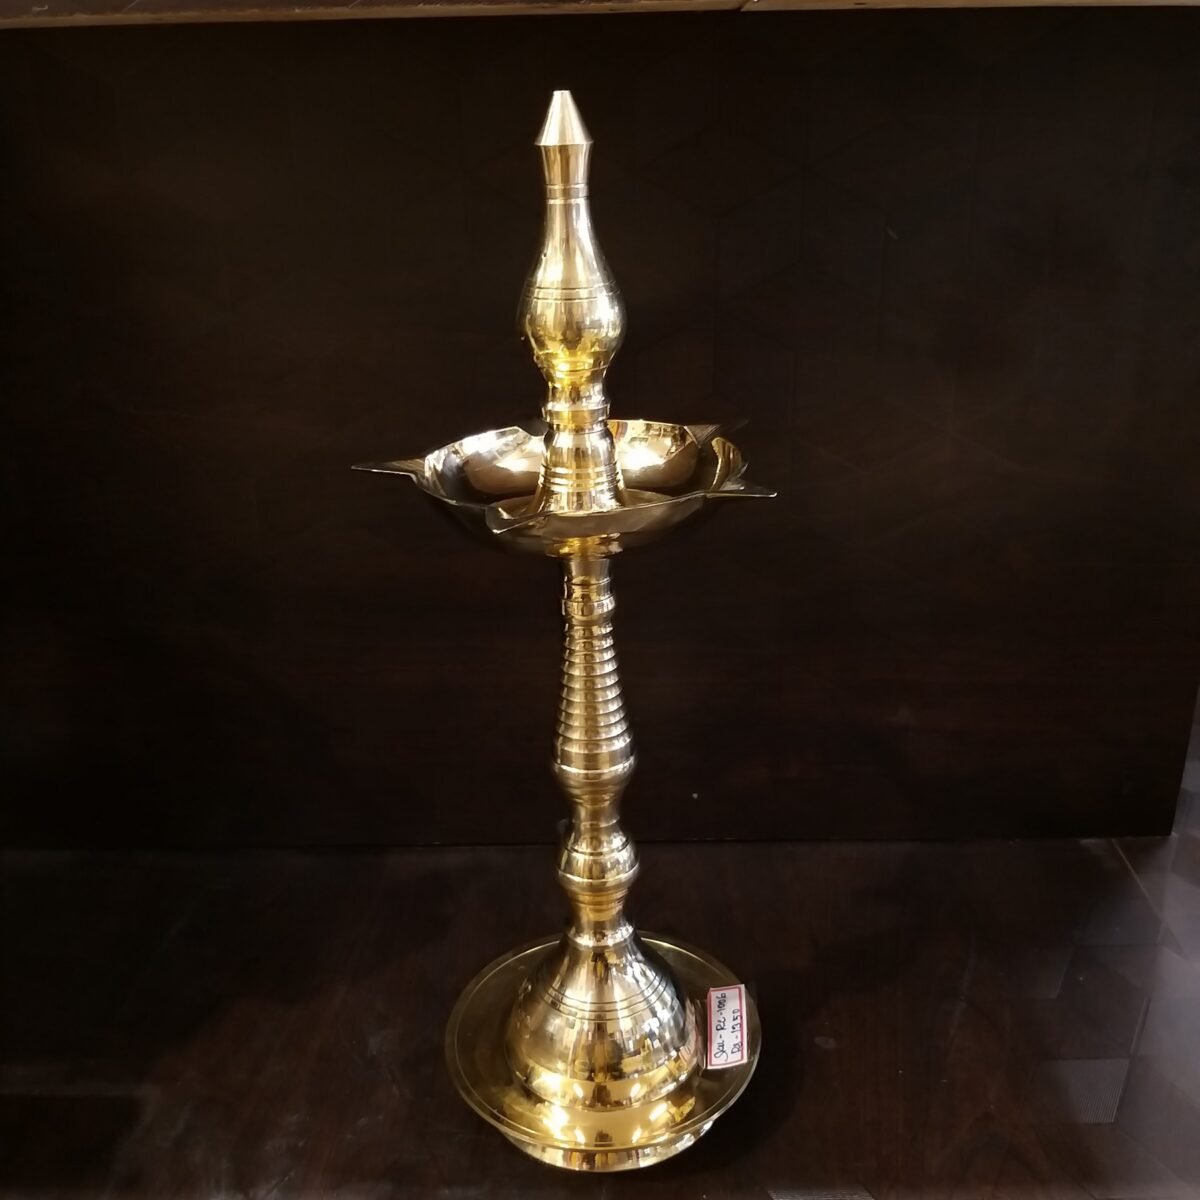 Copy of brass big size kuthuvillakku idol home decor pooja items gift buy online coimbatore